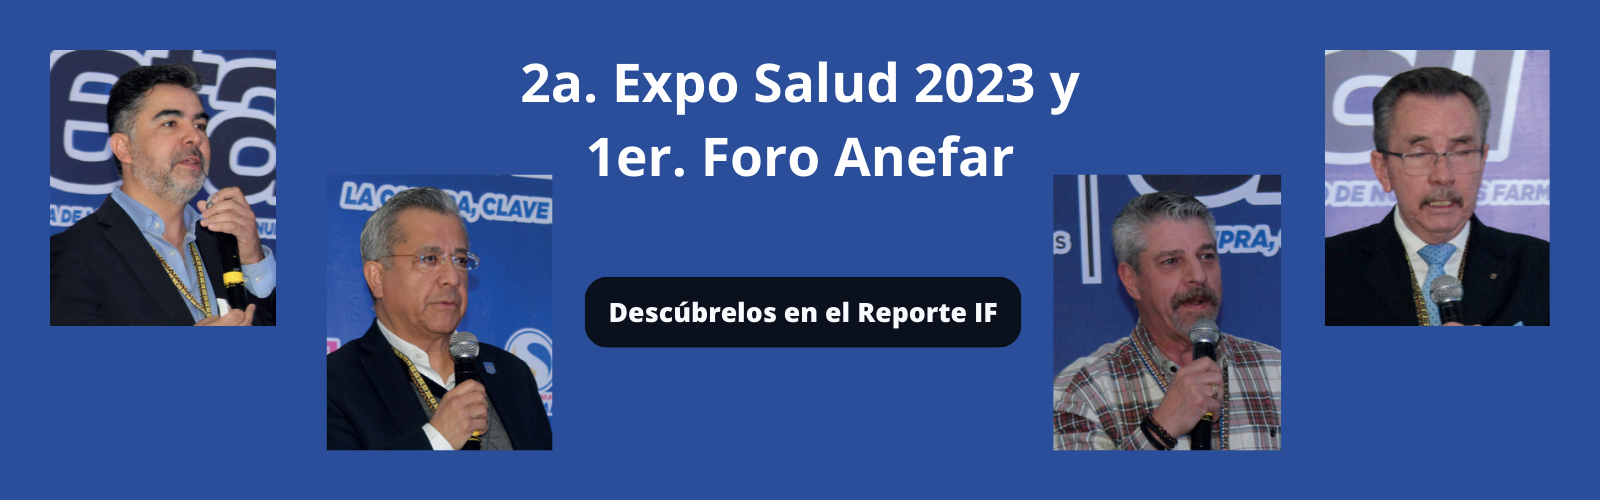 2a. Expo Salud 2023 y 1er. Foro Anefar